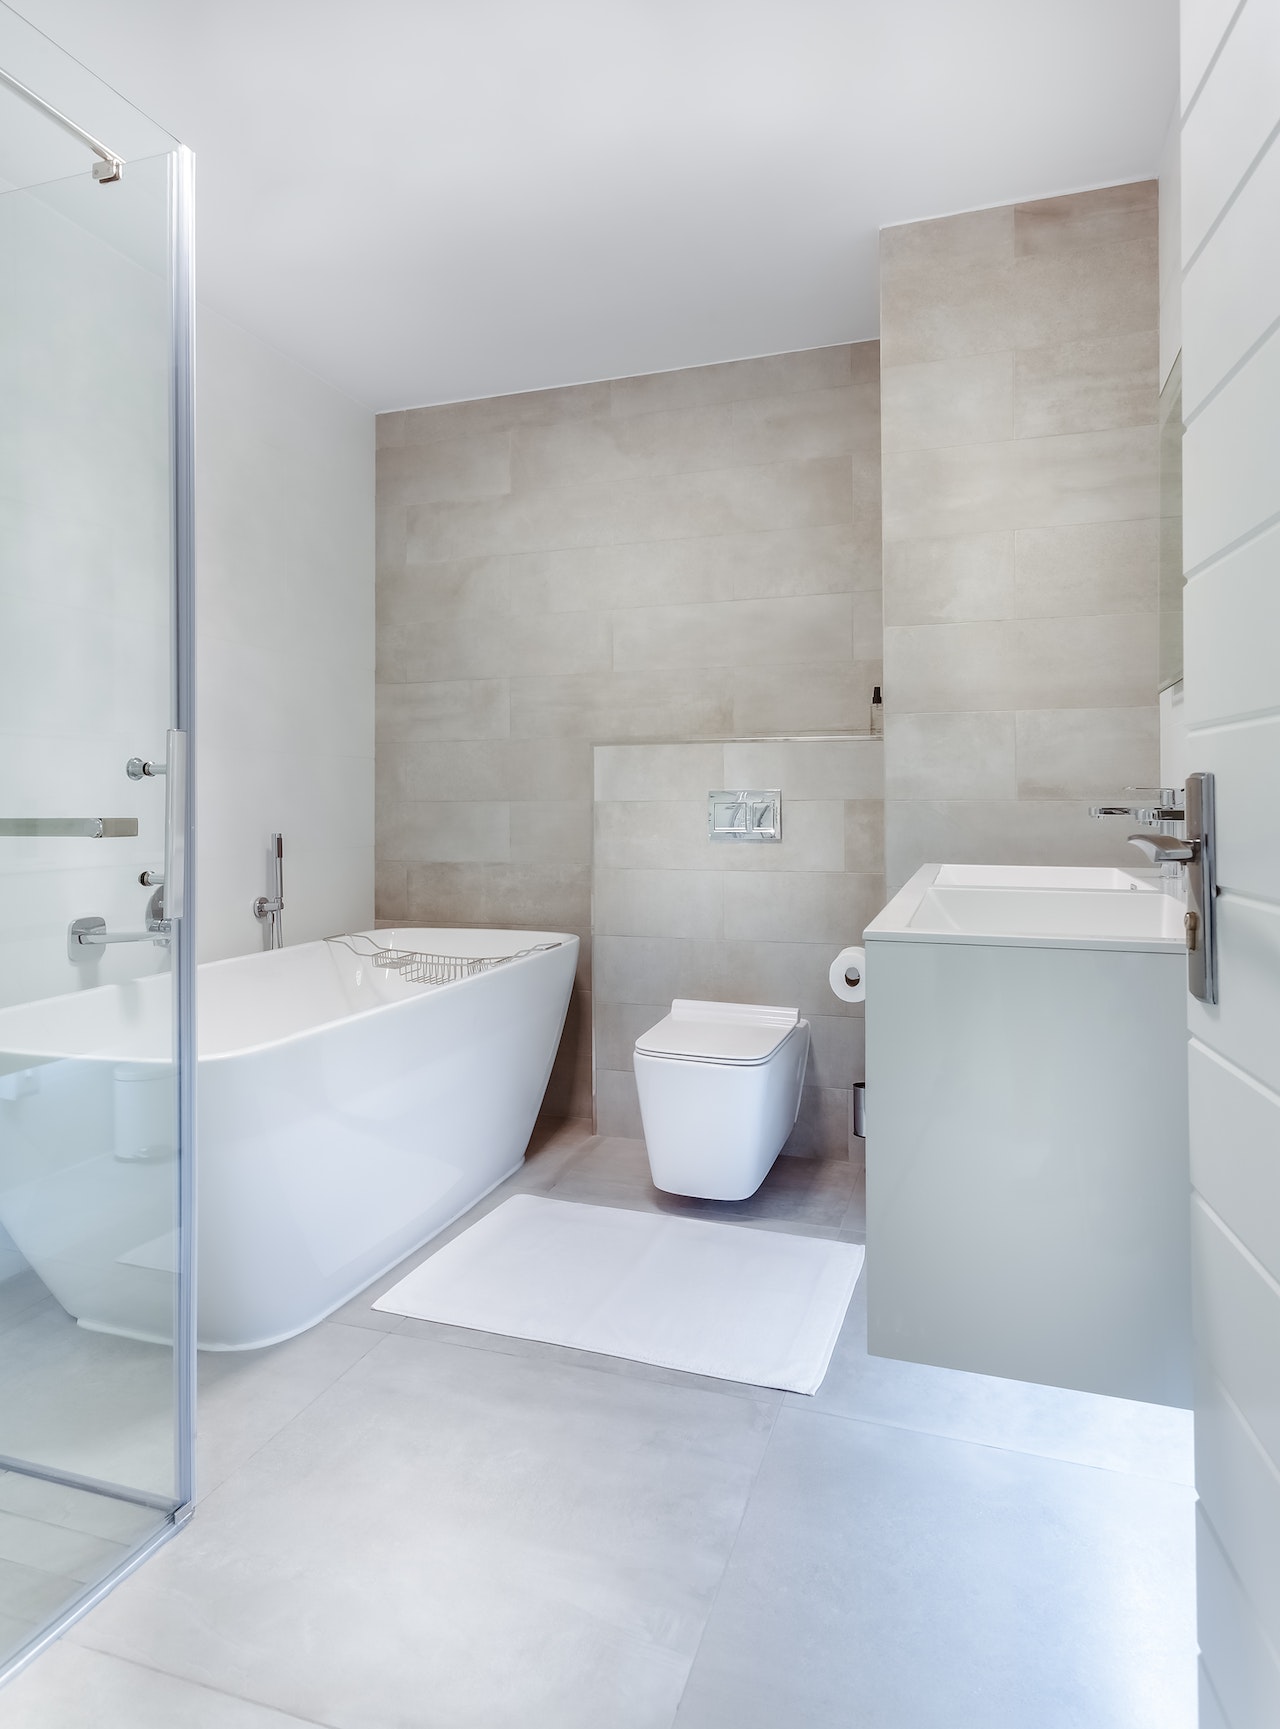 Remont małej łazienki – jak wykorzystać każdy metr kwadratowy?